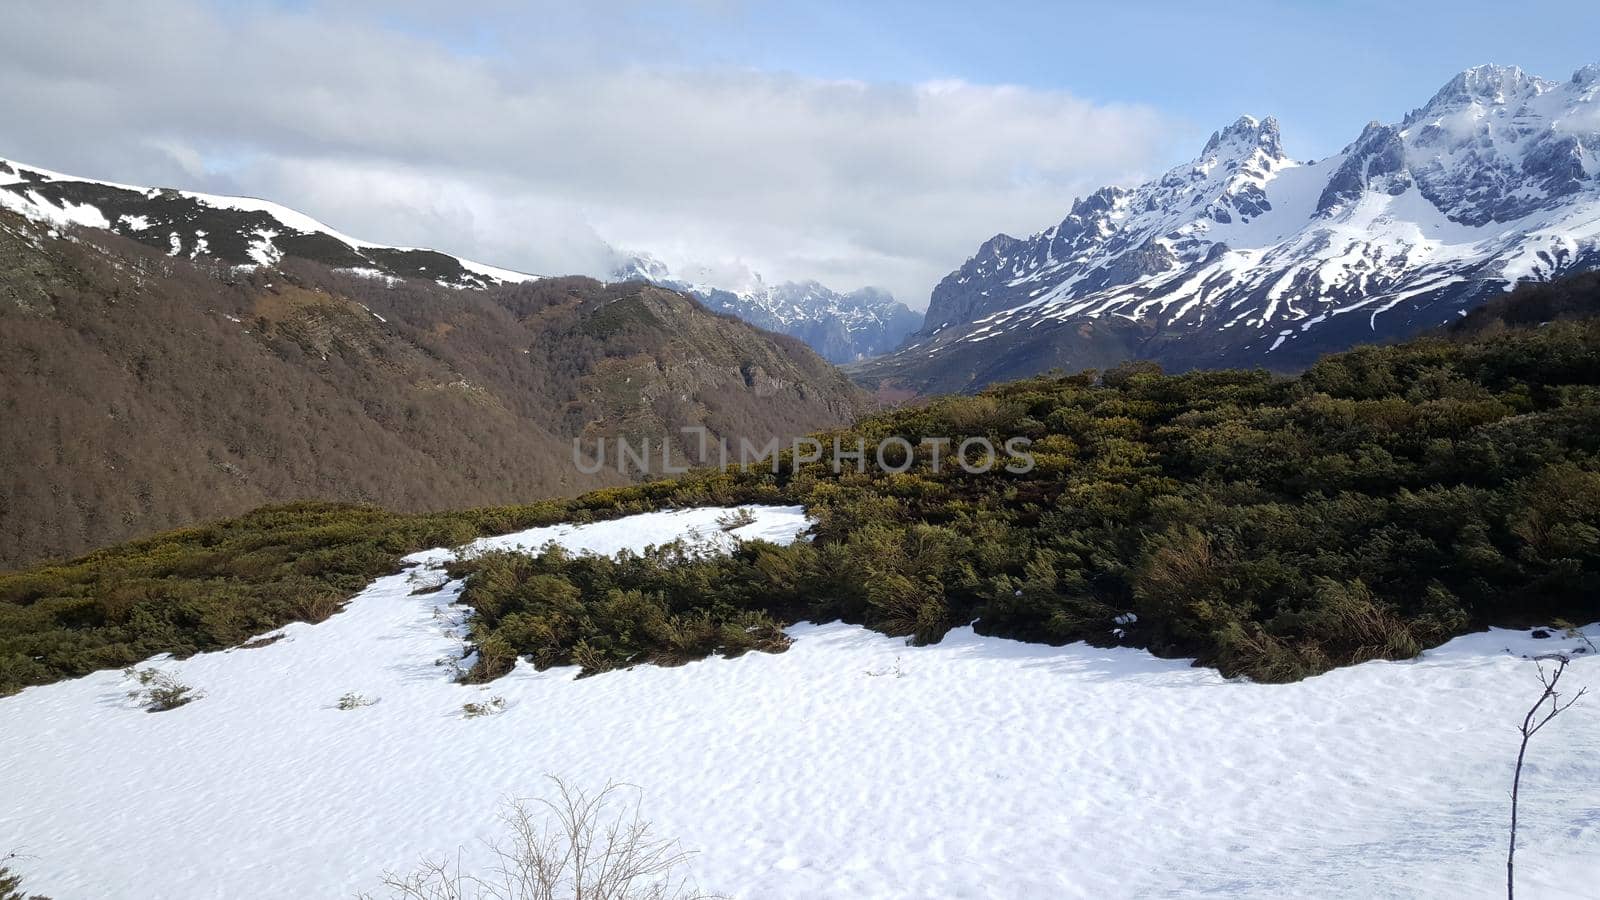 Snowy mountain landscape at Parque Nacional de Los Picos de Europa in Spain